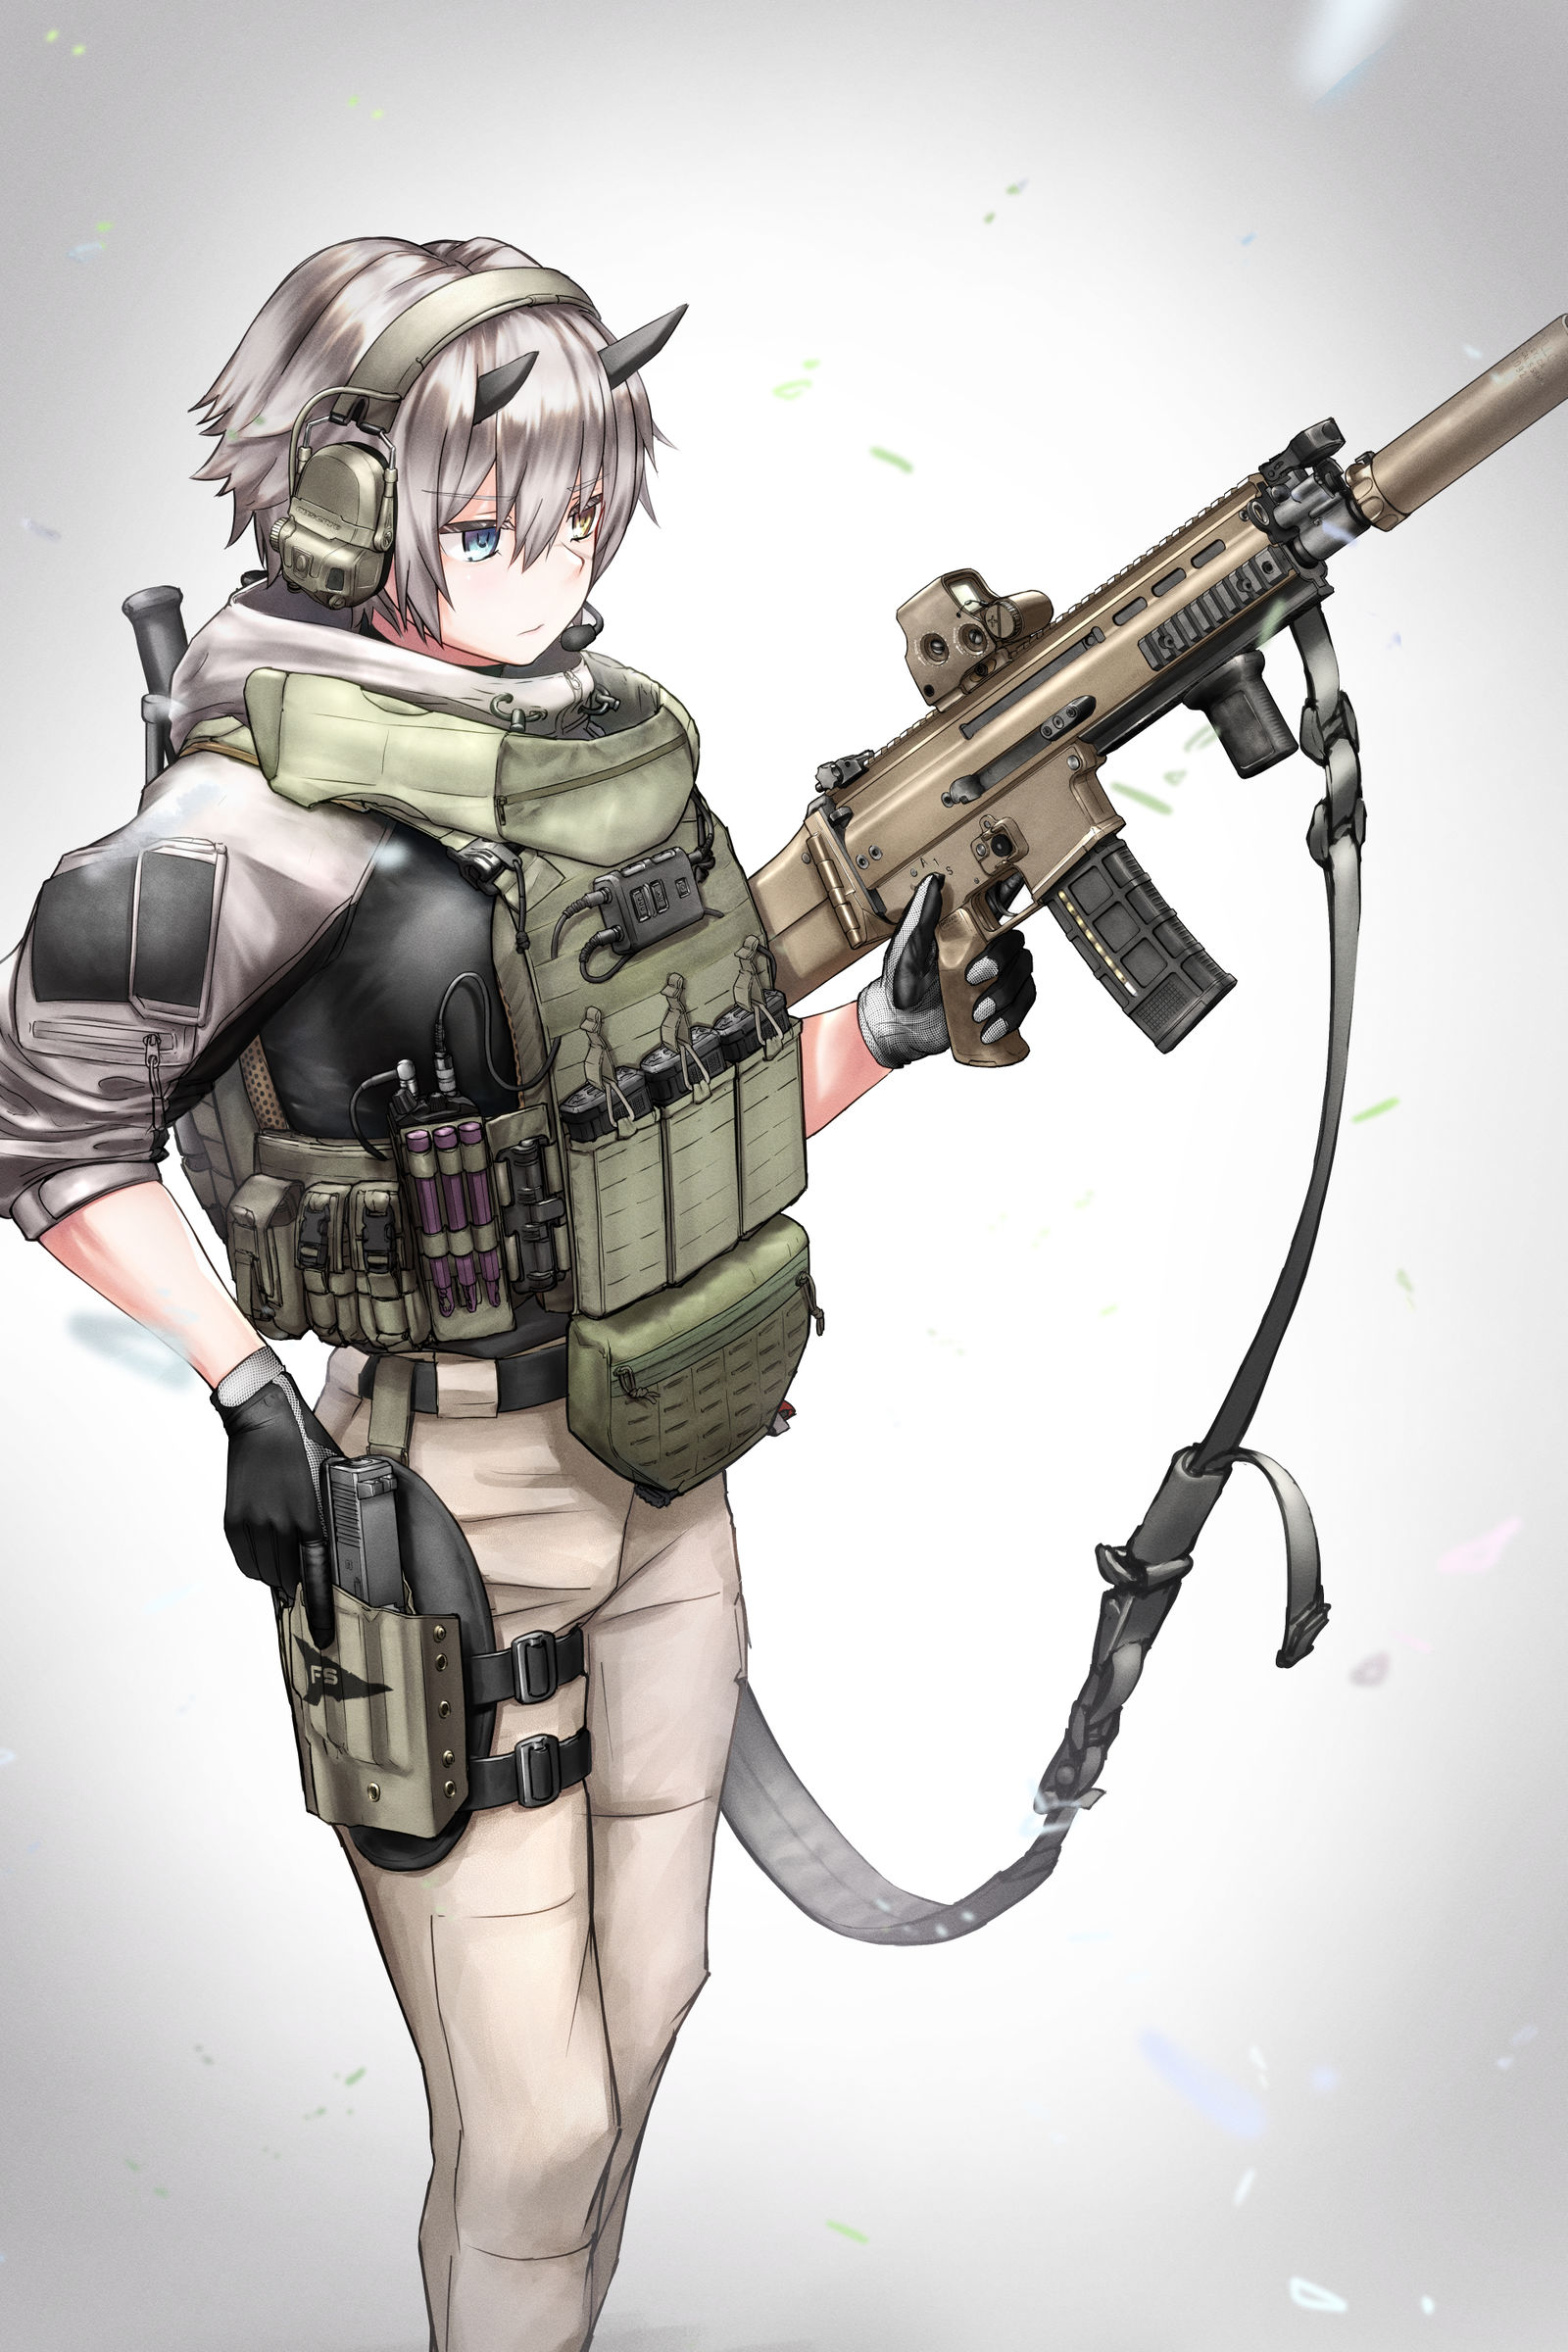 [skeb]FN SCAR-L